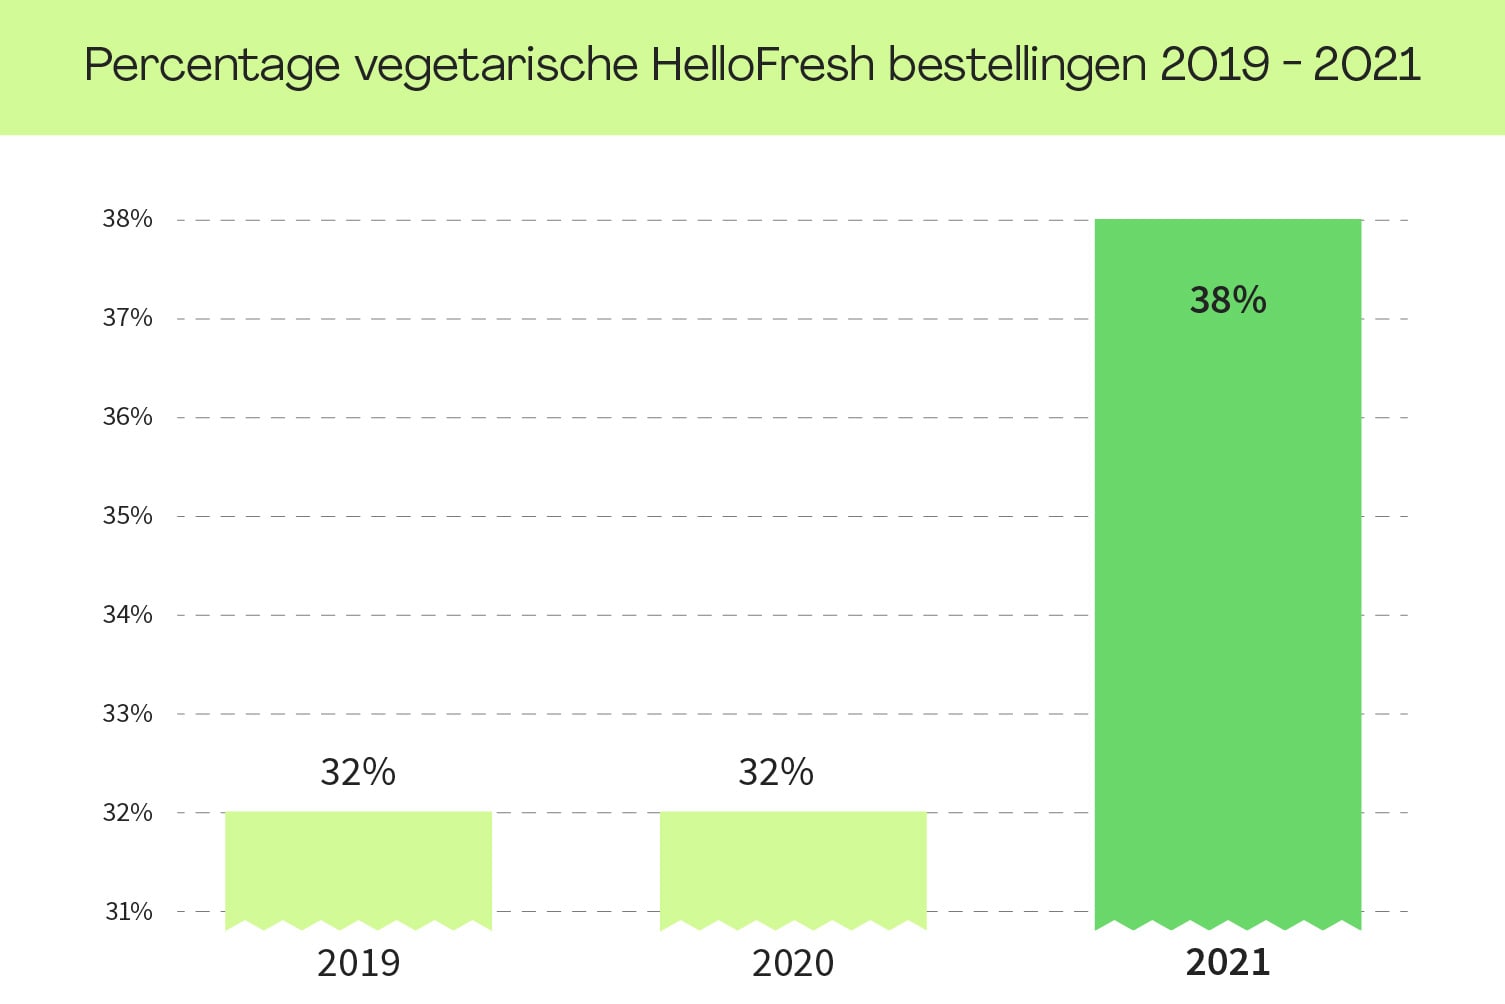 Veel meer Veggie-recepten besteld dan vorig jaar